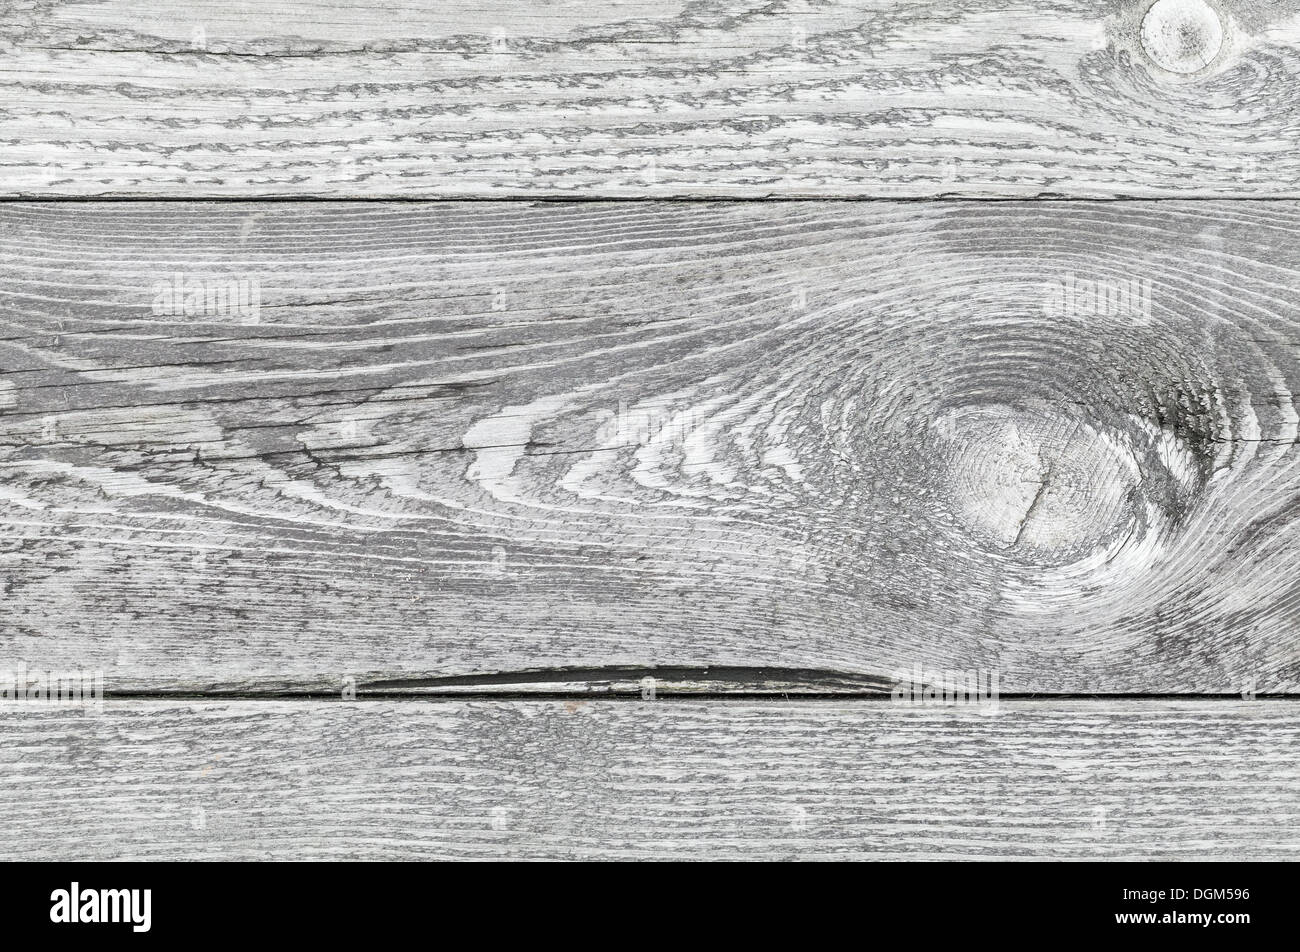 En bois patiné gris avec des détails, la texture de fond photo Banque D'Images